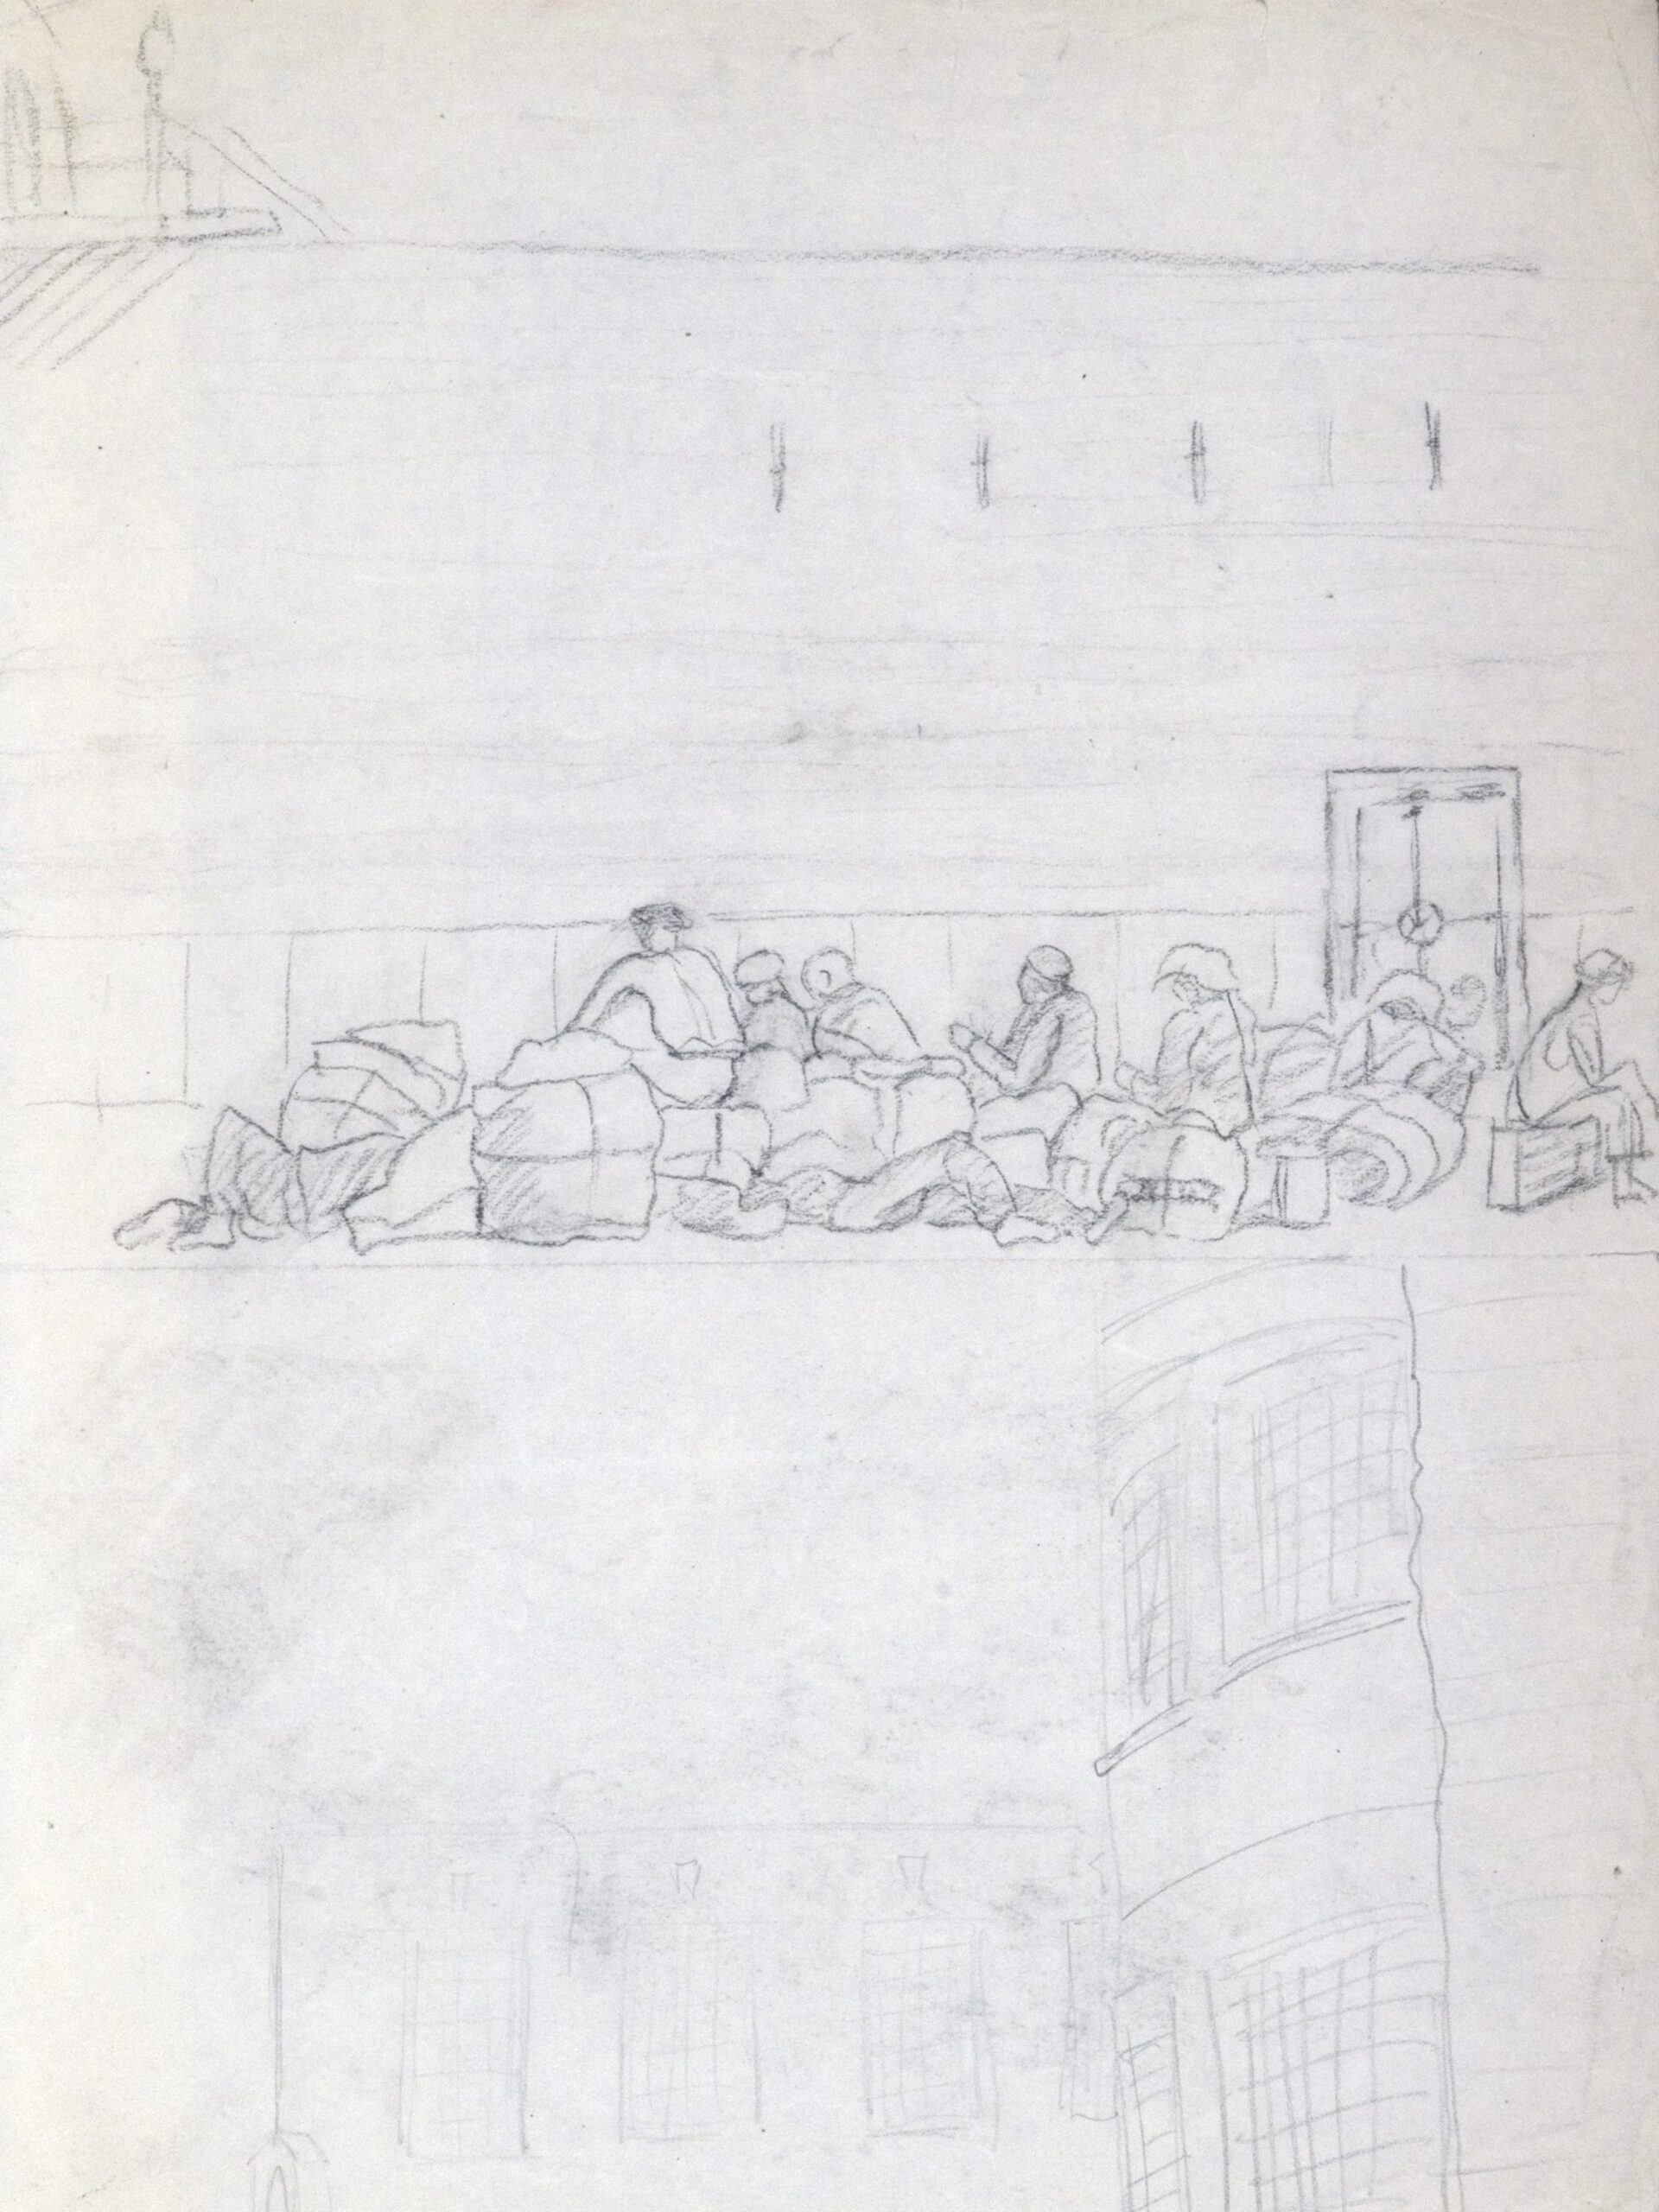 Dibujo de José Manaut titulado Varios sentados en petates y ventanas enrejadas, mitad y mitad, 1944. Grafito.